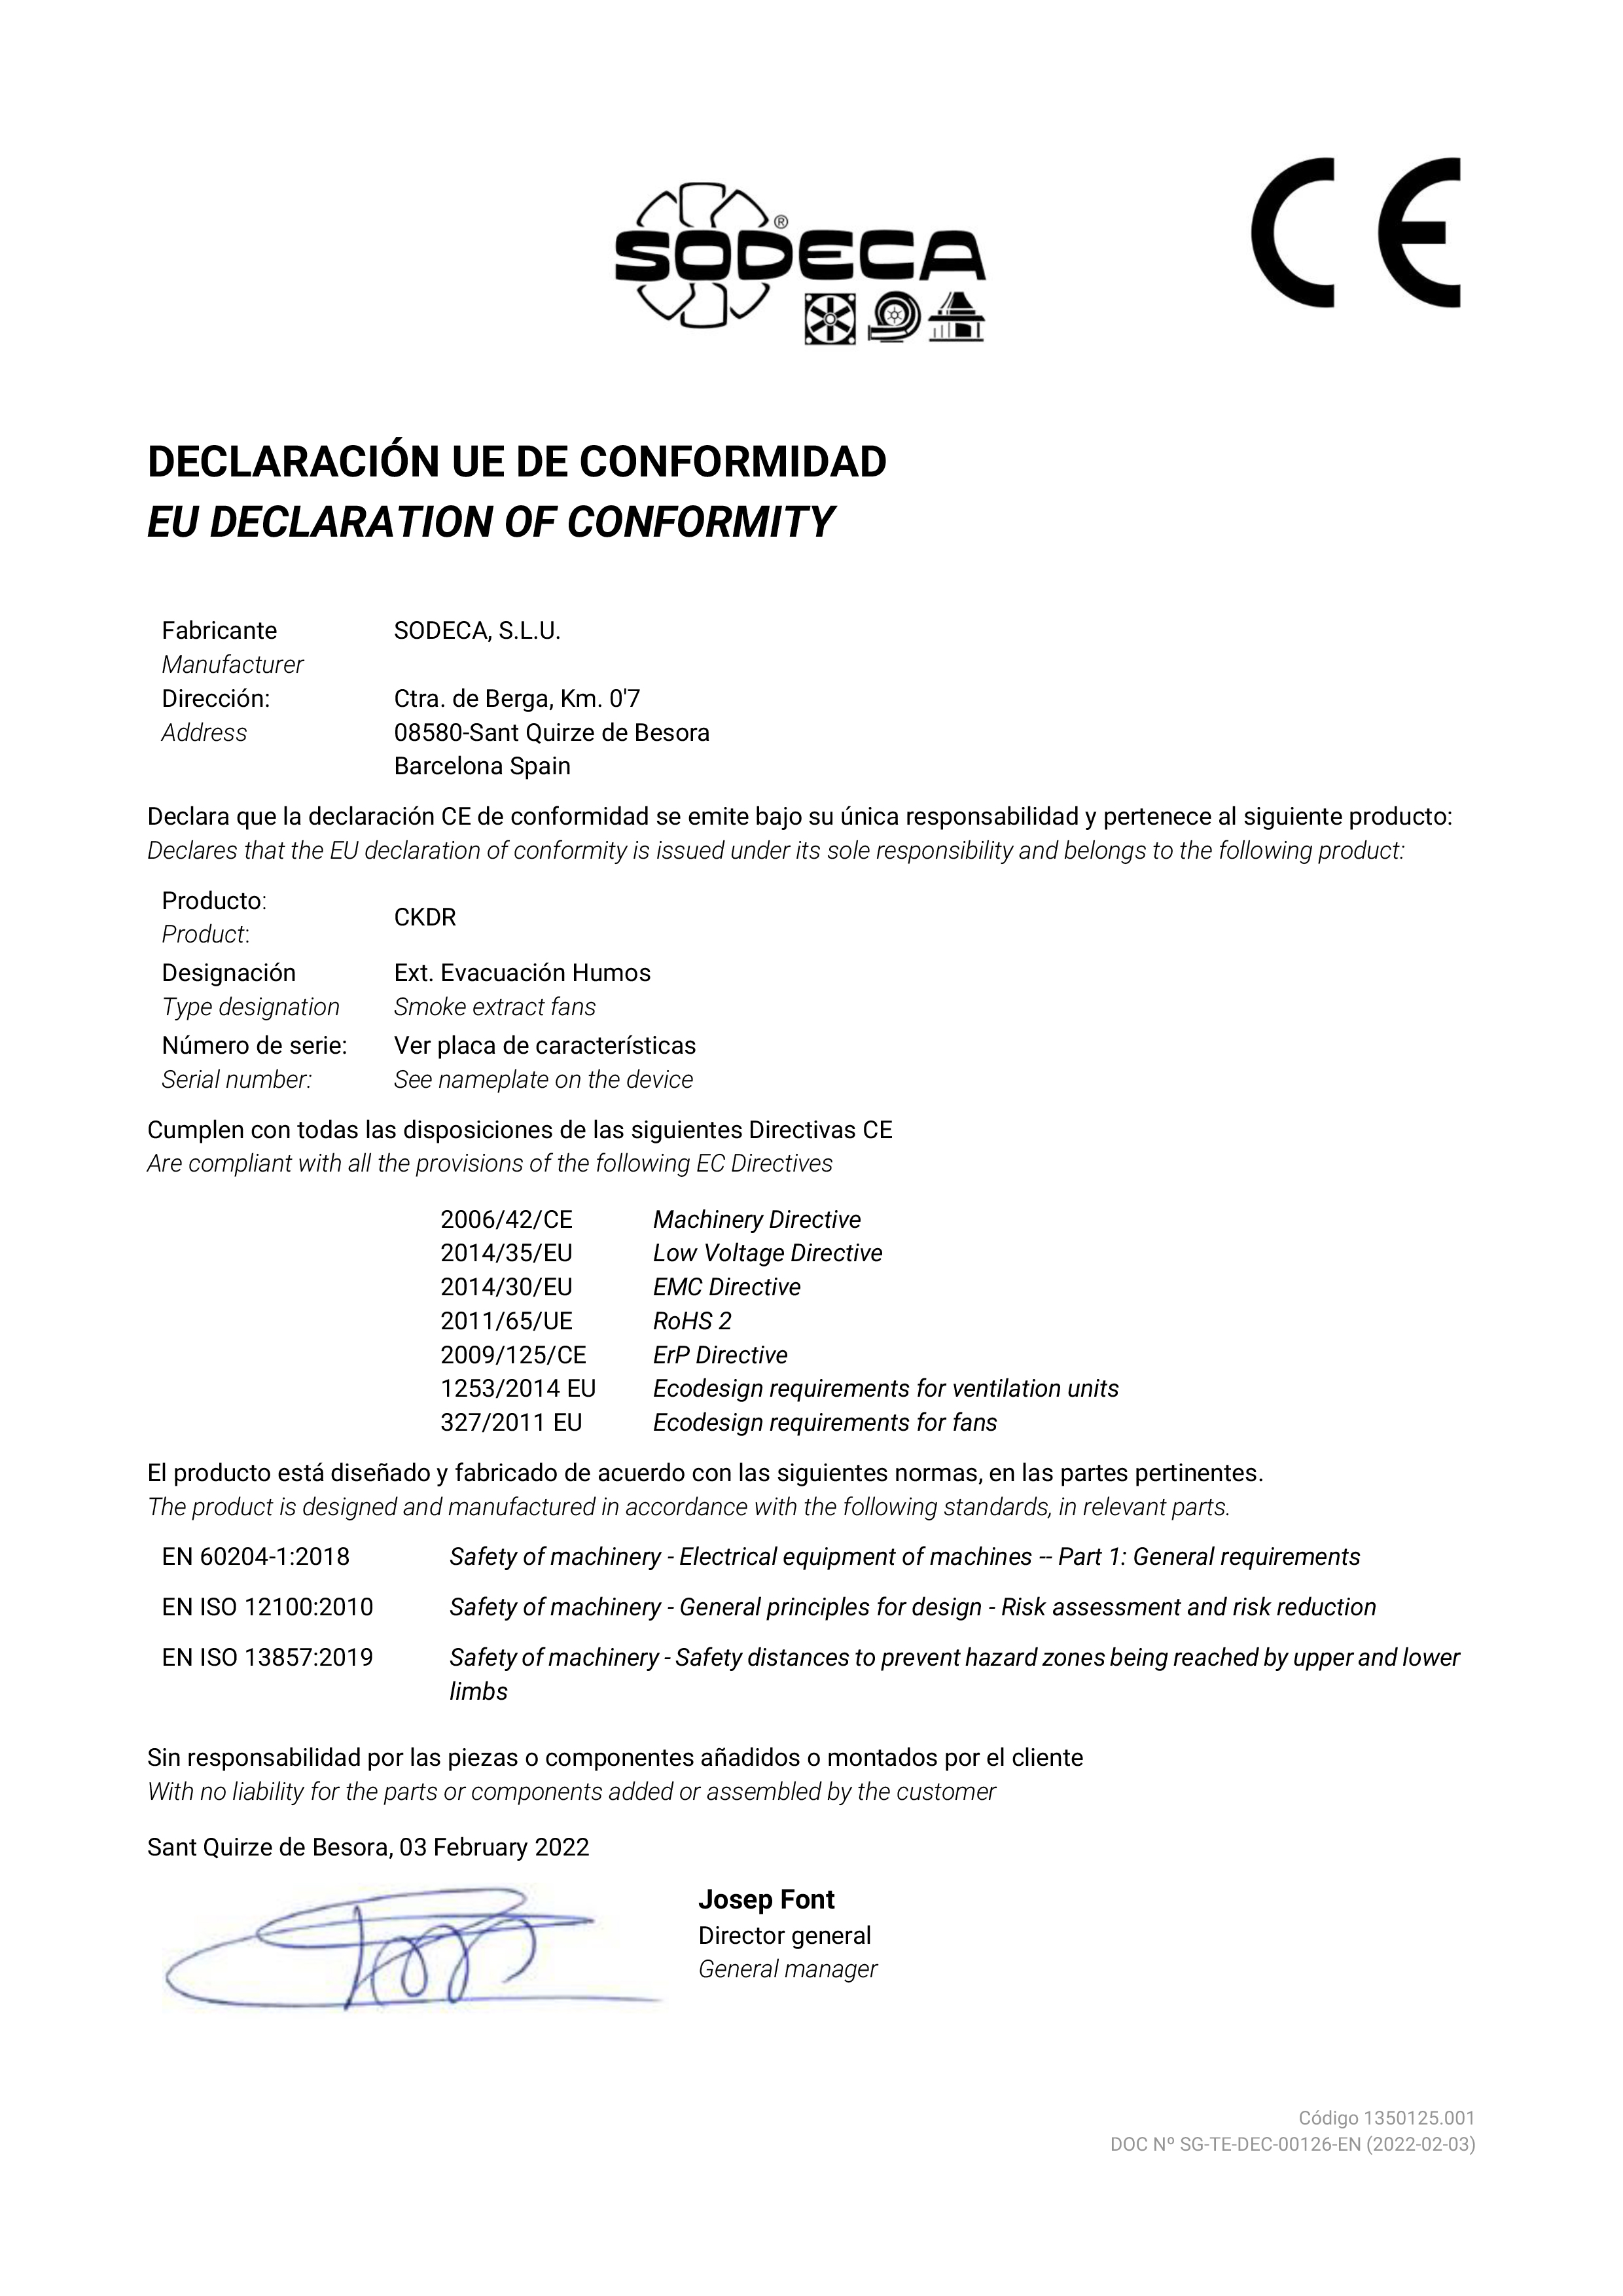 DECLARATION of CONFORMITY "CKDR EC"